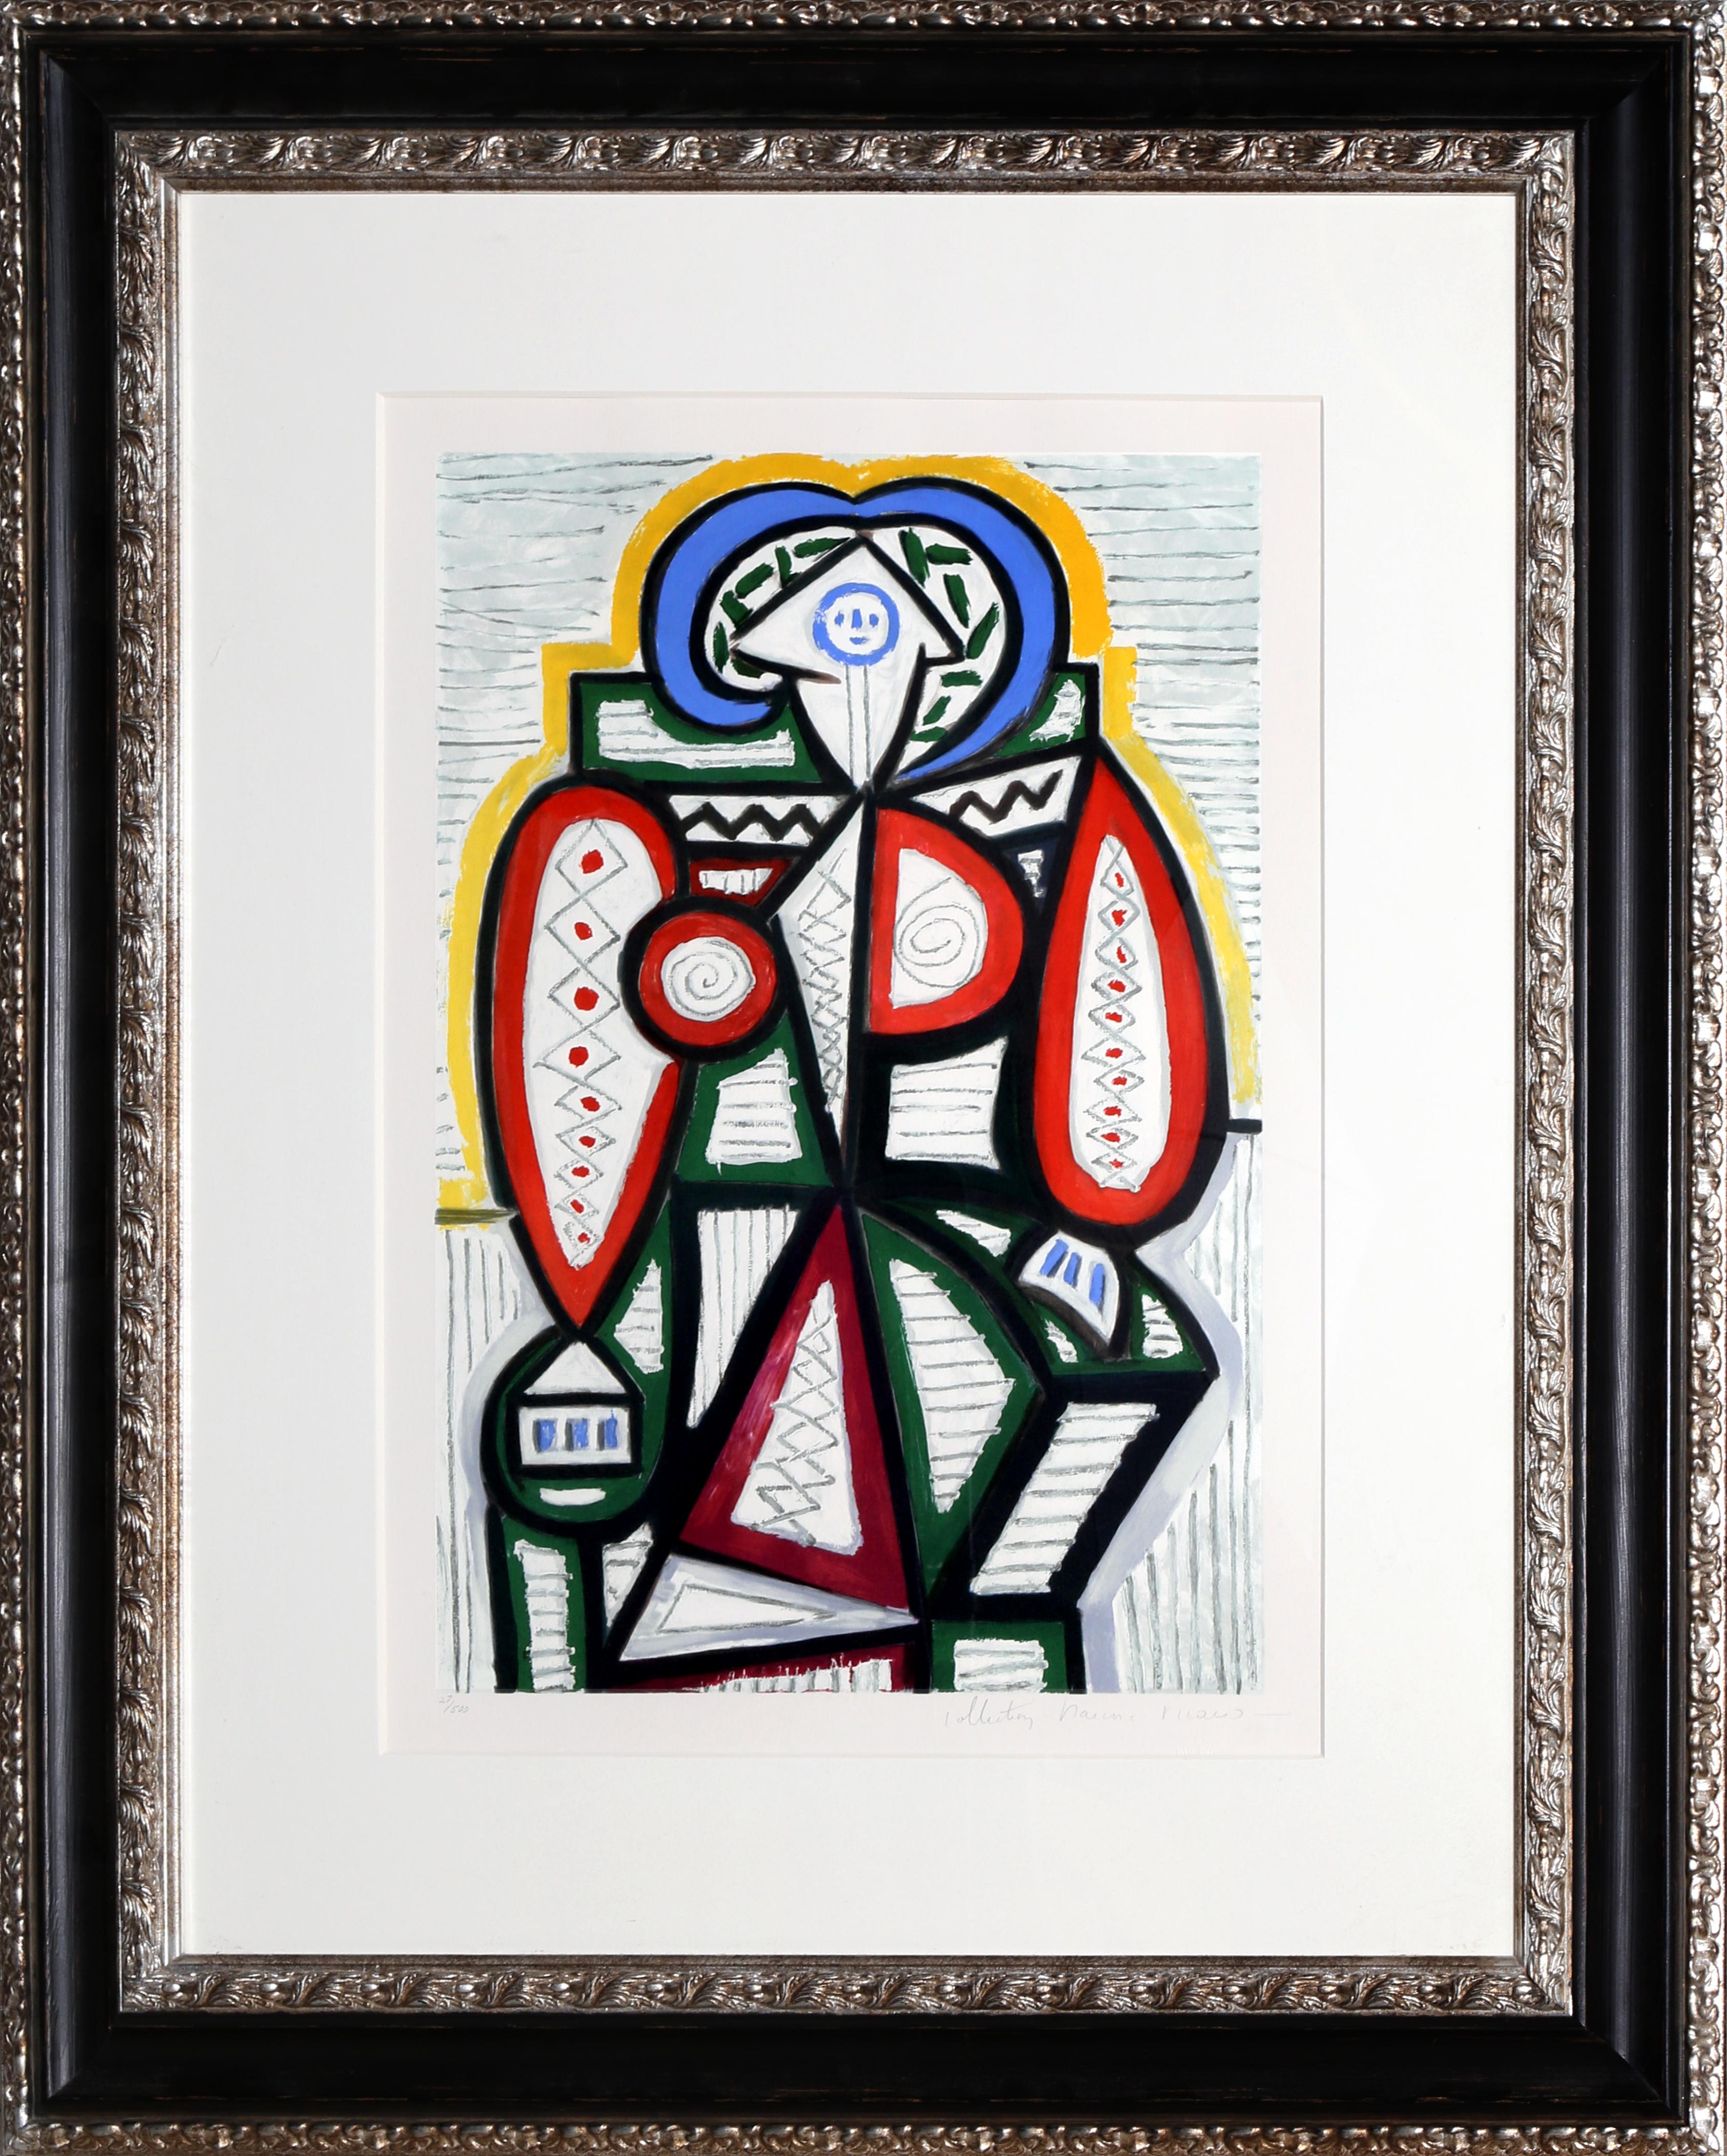 Une lithographie provenant de la Collection SALE de Marina Picasso d'après le tableau de Pablo Picasso "Femme Assise". La peinture originale a été achevée en 1947. Dans les années 1970, après la mort de Picasso, Marina Picasso, sa petite-fille, a